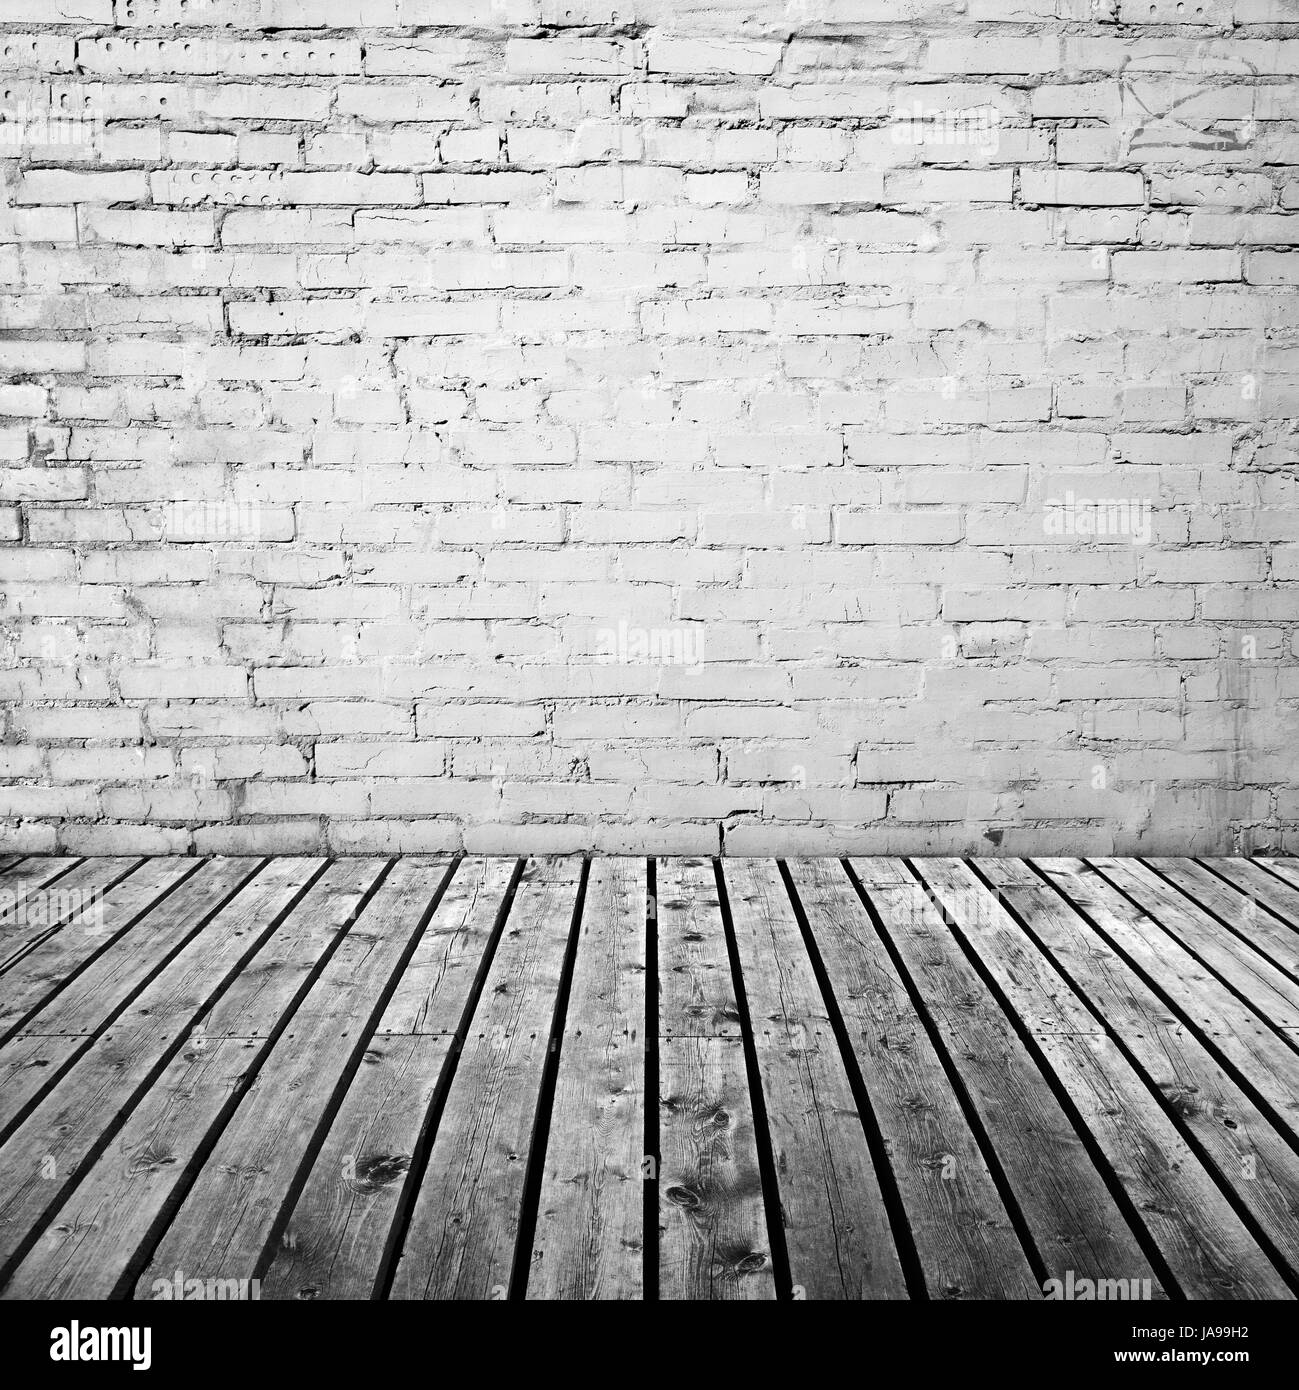 Bianco parete in mattoni grigi e pavimento in legno, abstract sbozzato di fondo interna Foto Stock